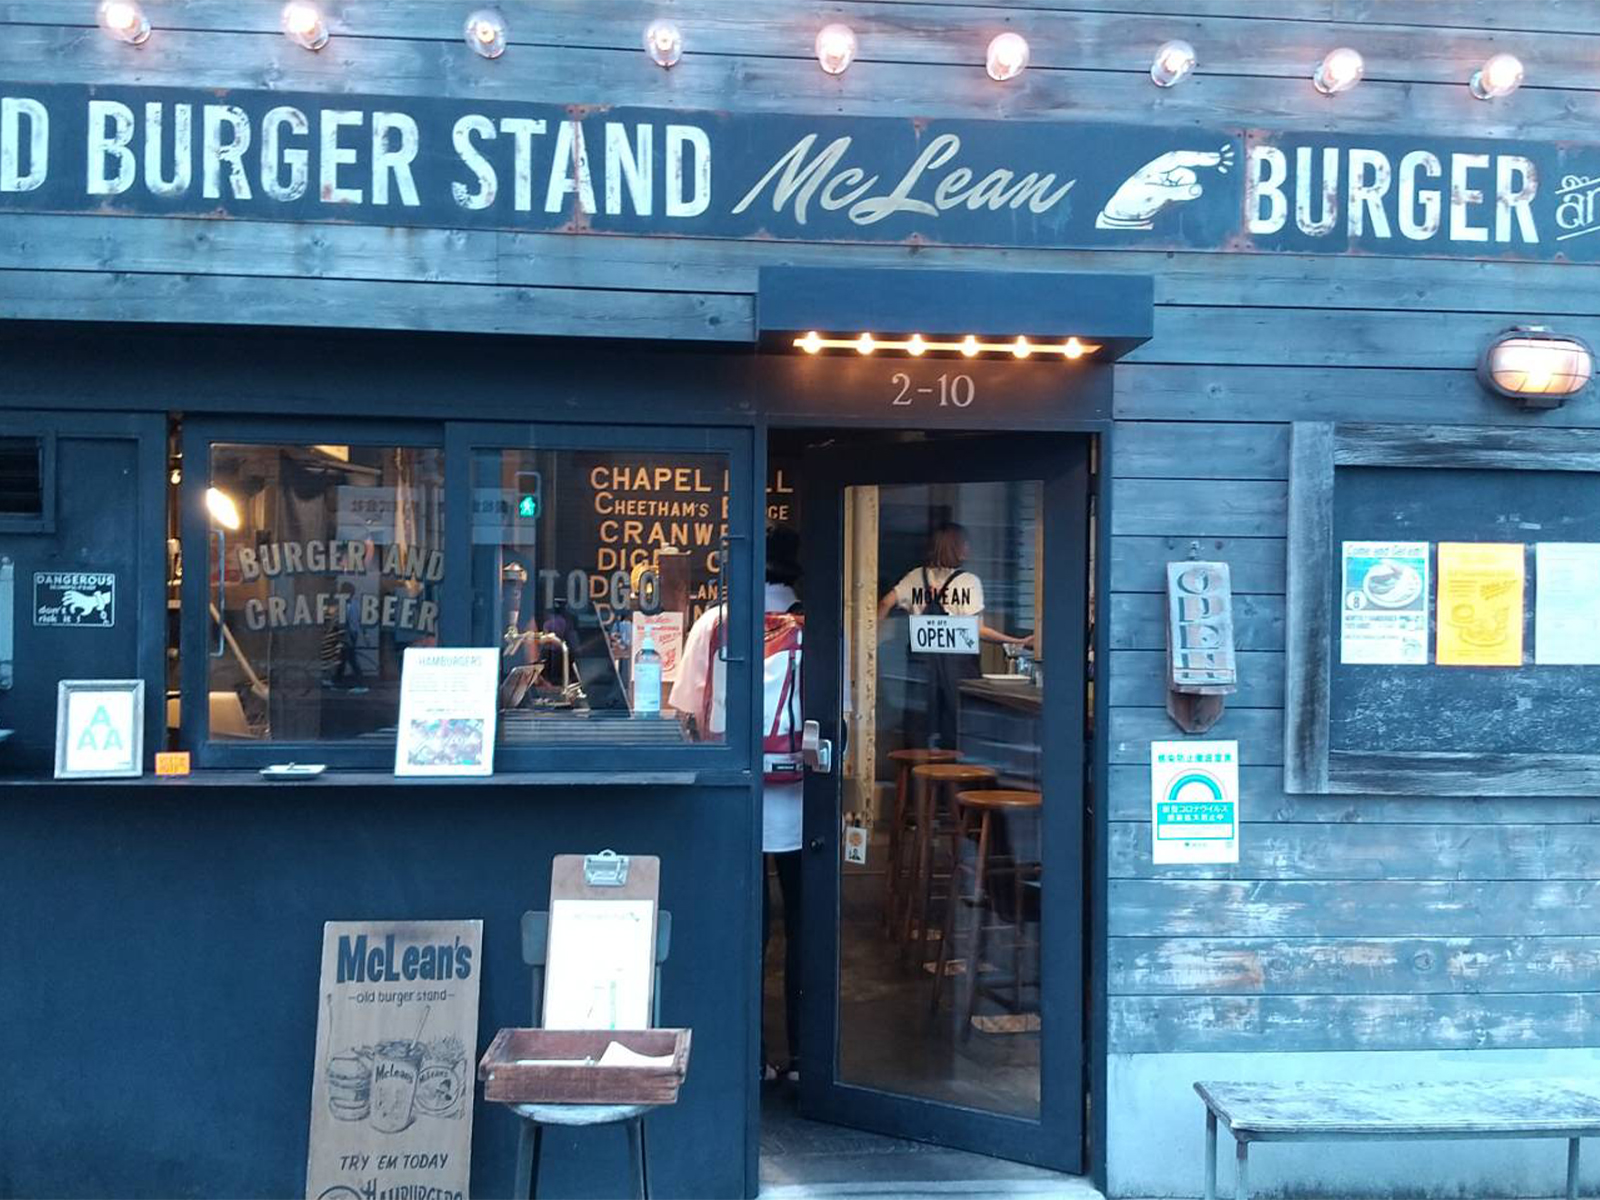 問屋の街、蔵前にあるアメリカンな雰囲気のハンバーガー屋さん「McLean -old burger stand-」のアイキャッチ画像